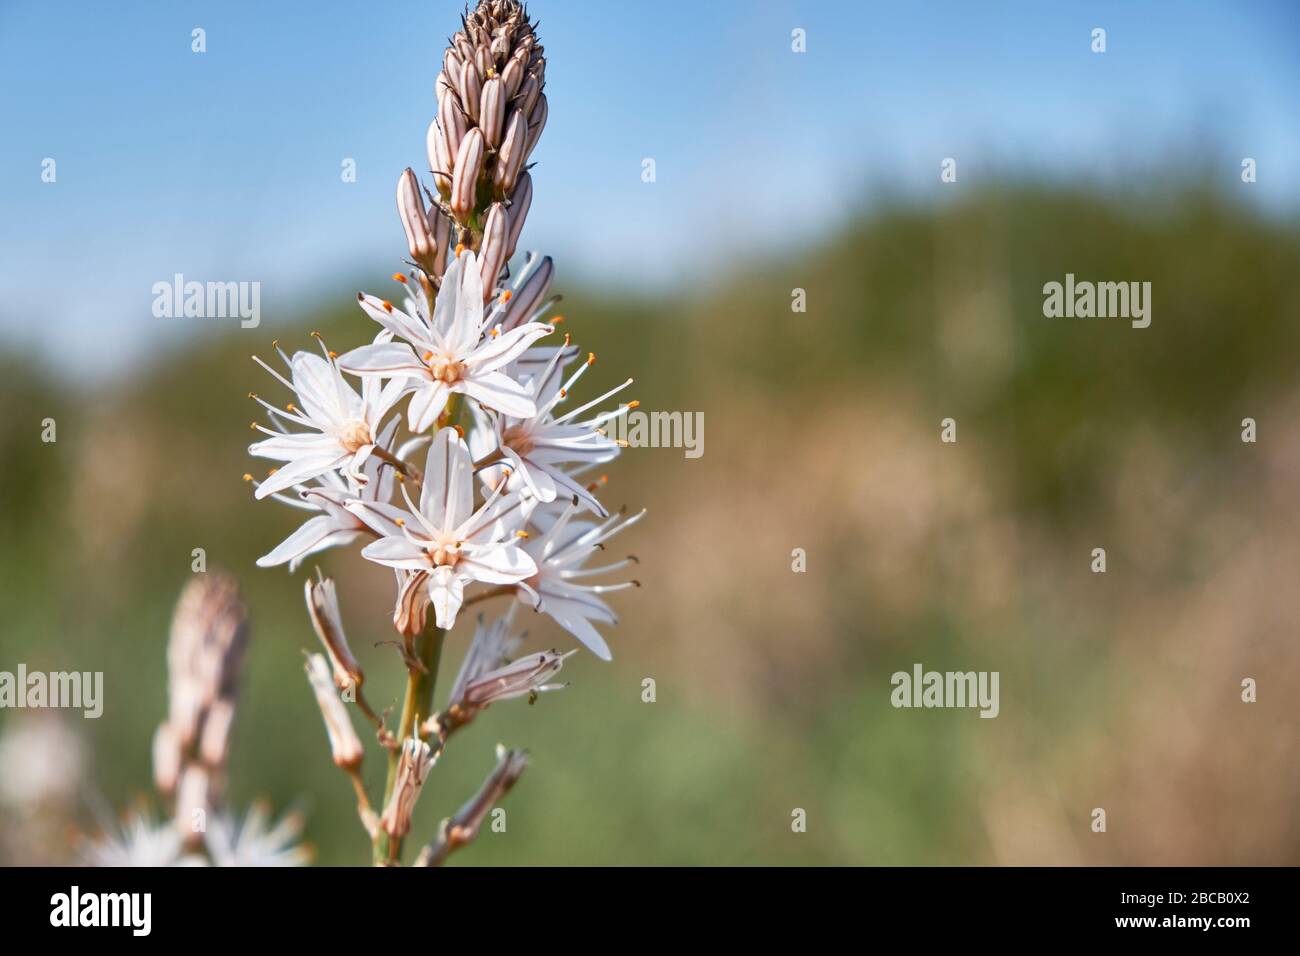 Flowers and bud of White asphodel or Asphodelus albus. Stock Photo